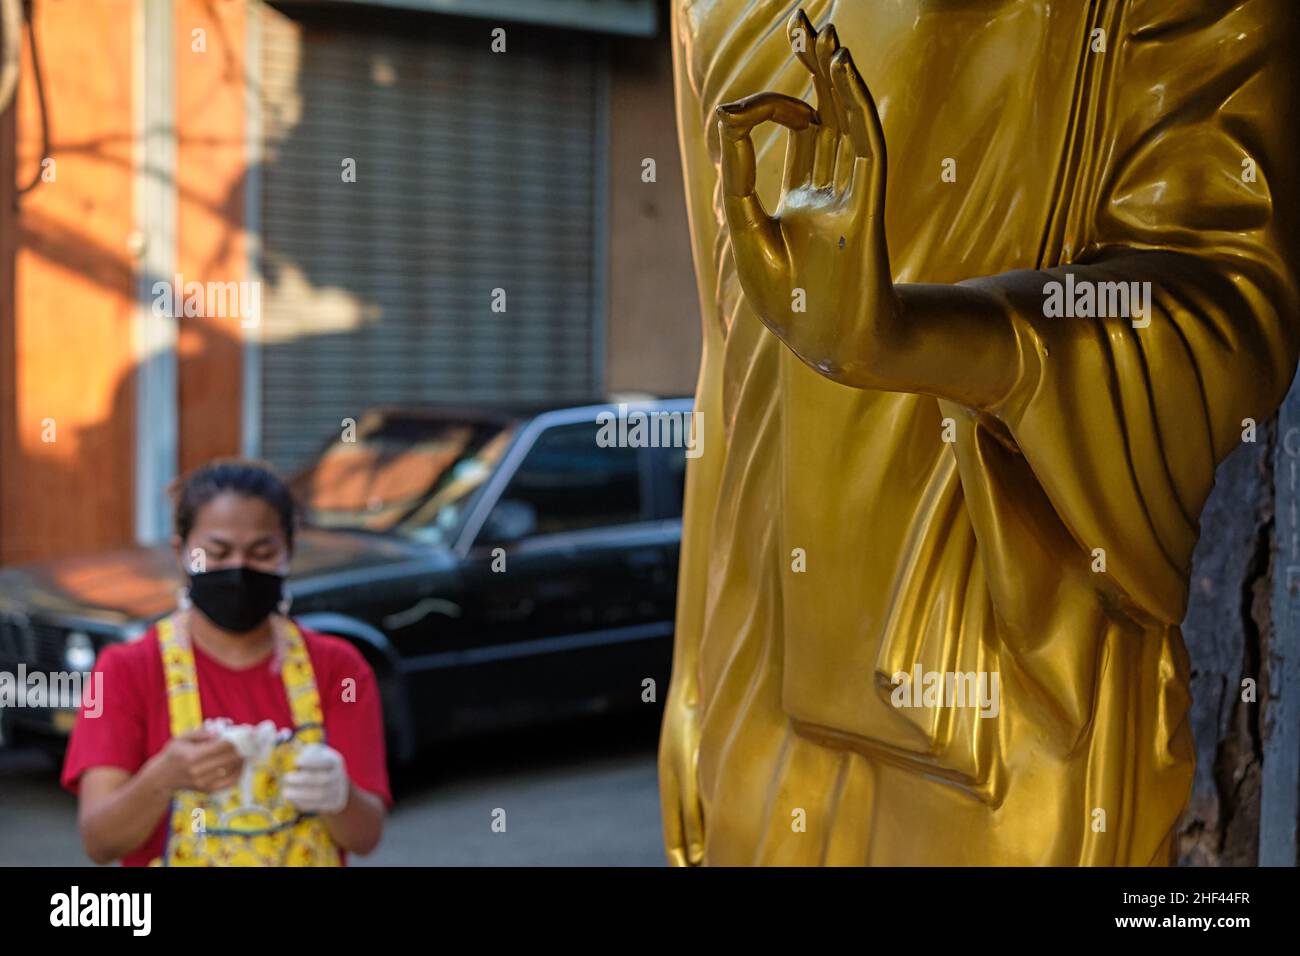 Statua del Buddha con mano in Vitarka Mudra, un gesto che simboleggia l'imitazione della conoscenza; fuori da un negozio buddista, Bambung Muang Rd, Bangkok, Thailandia Foto Stock